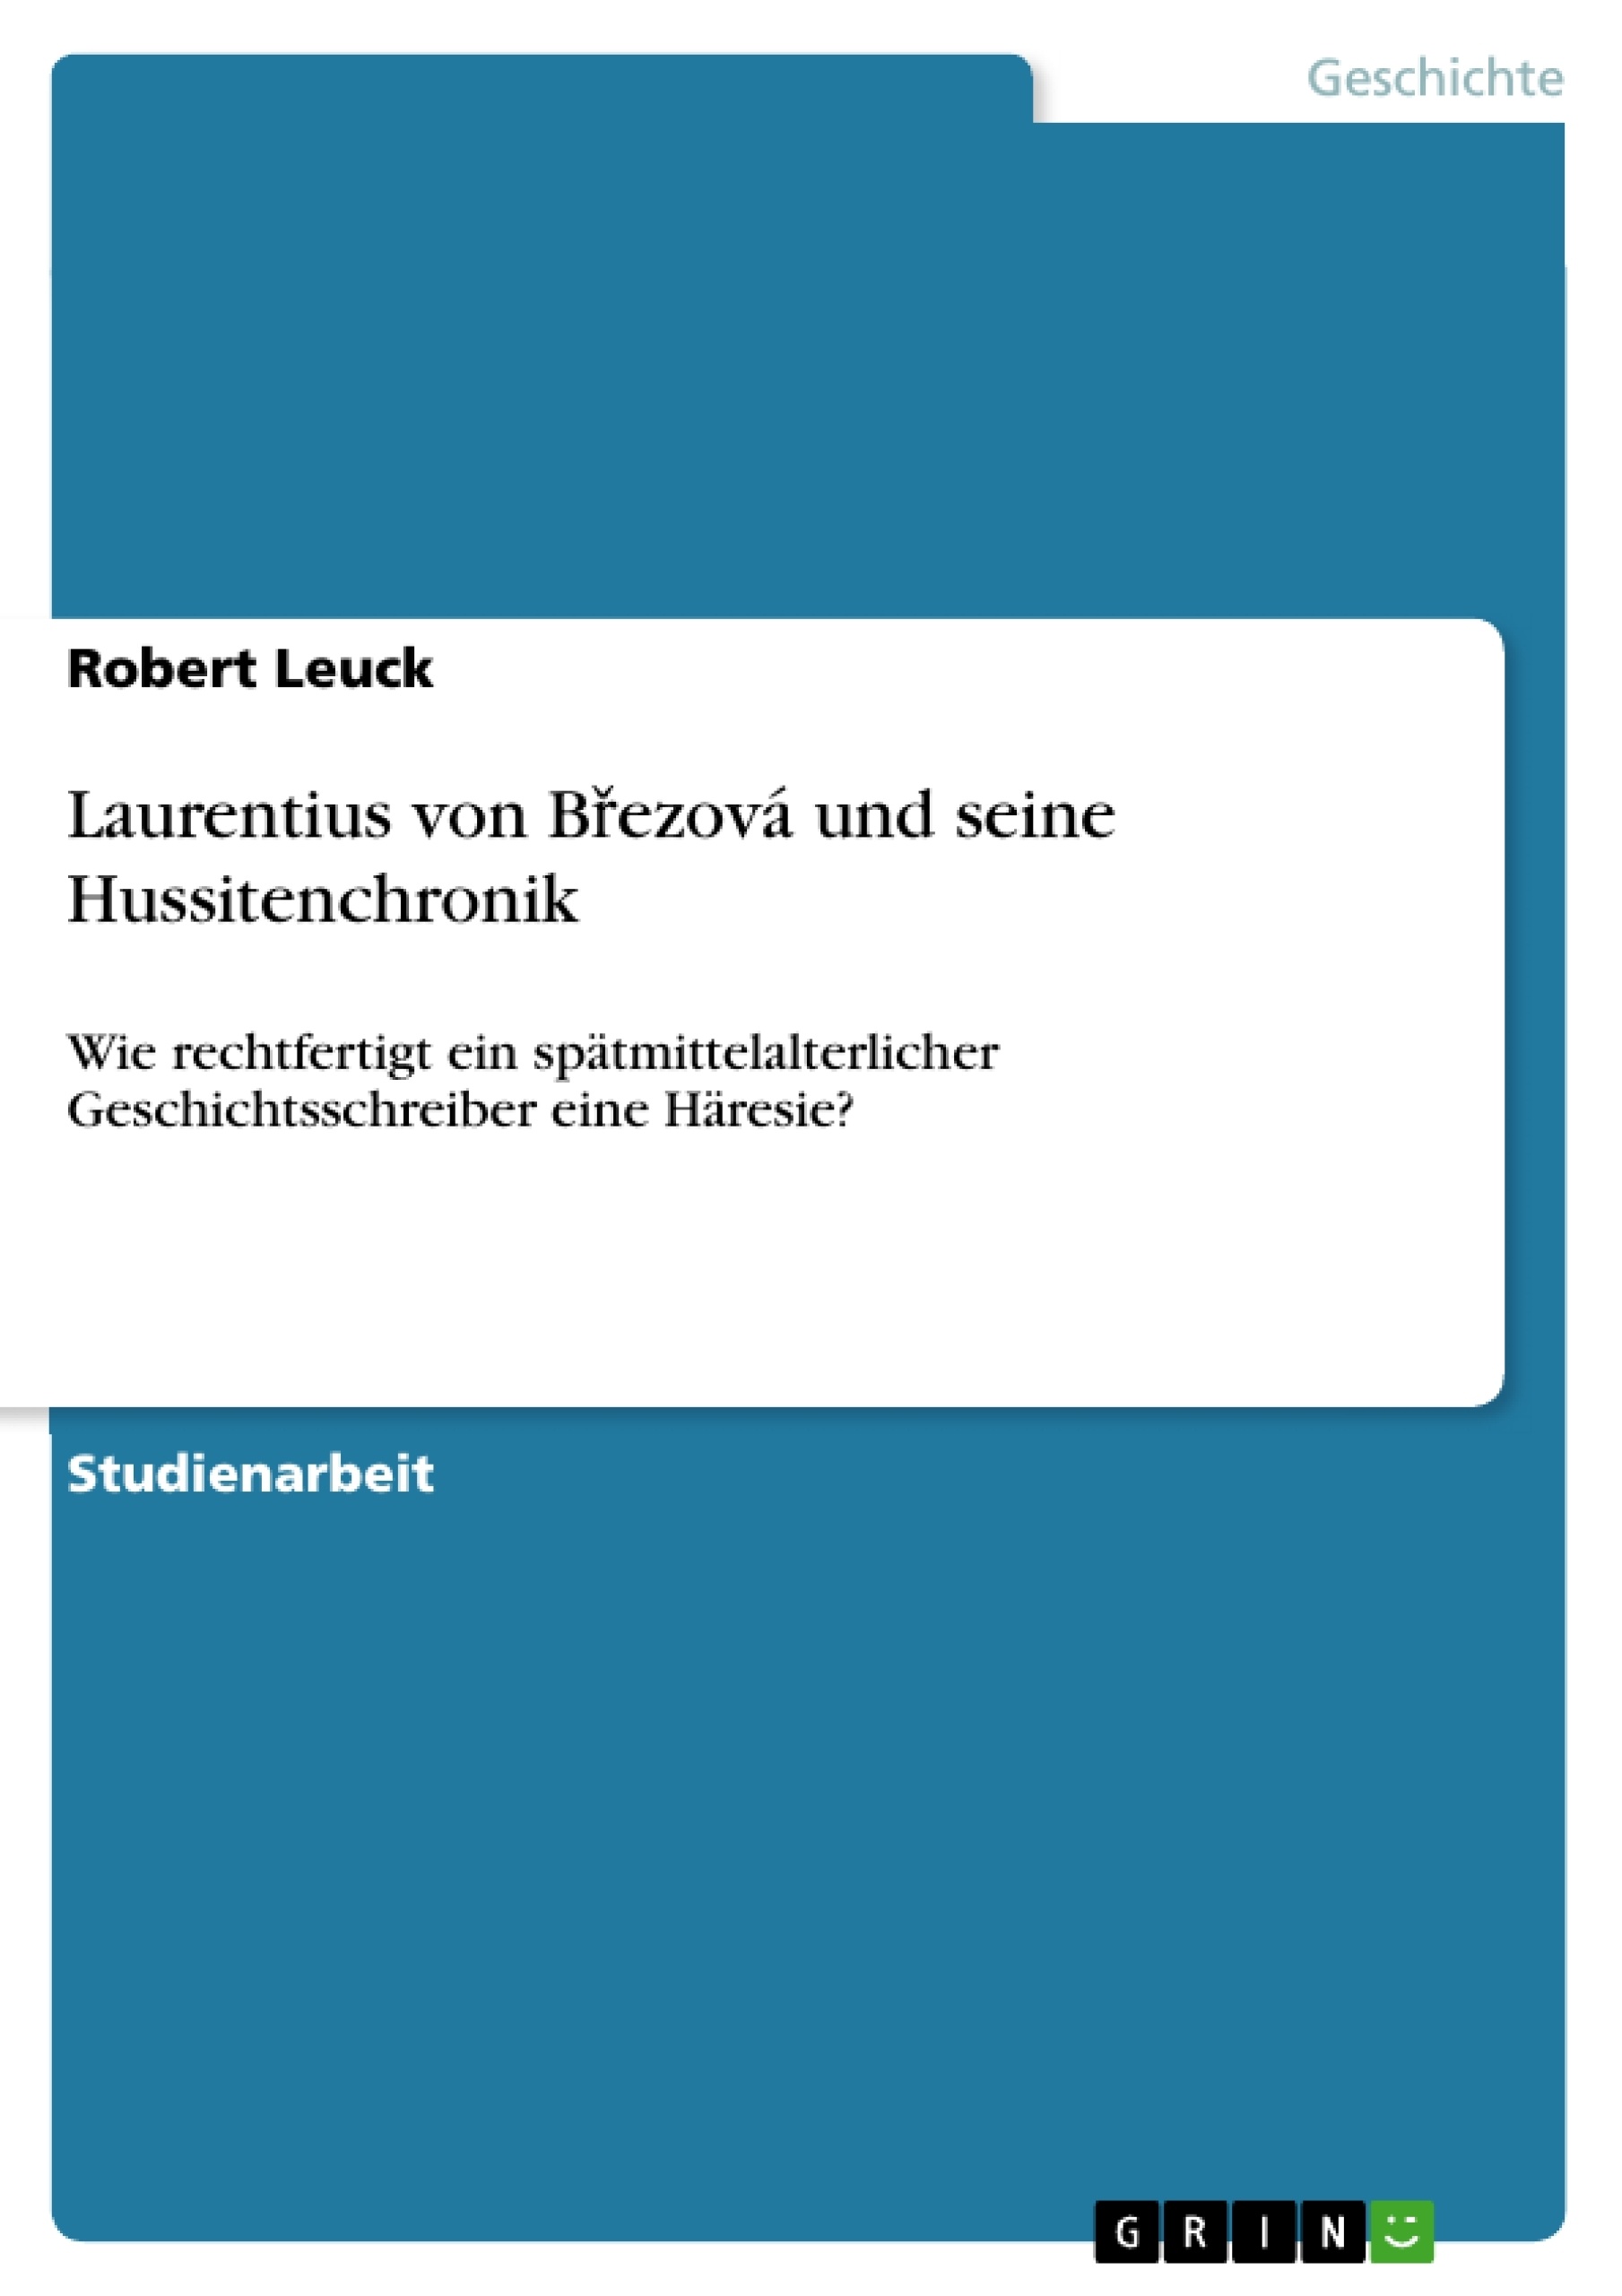 Título: Laurentius von Březová und seine Hussitenchronik